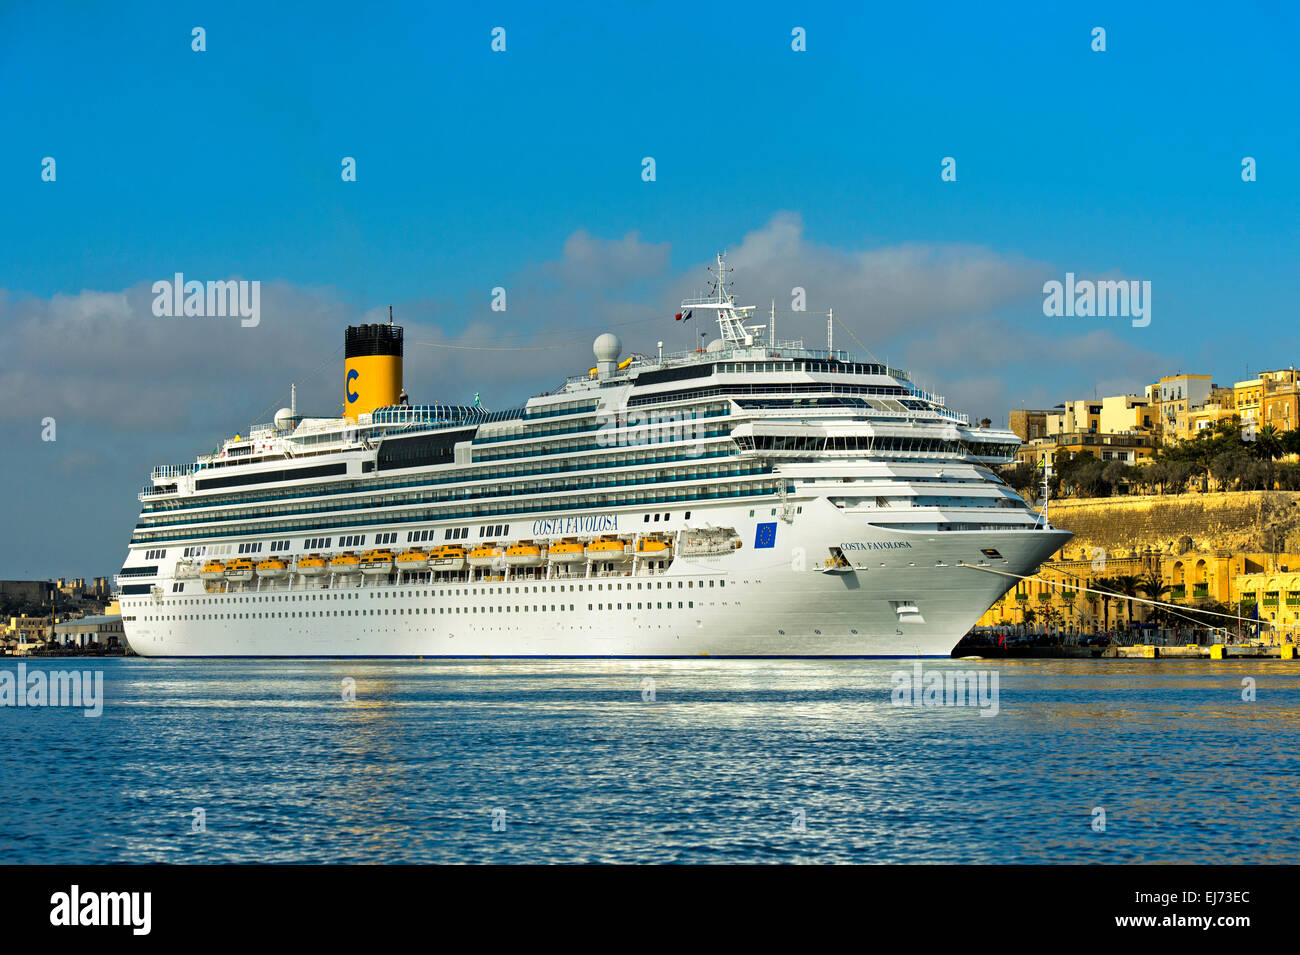 Cruise ship Costa Favolosa in the port of Valletta, Malta Stock Photo